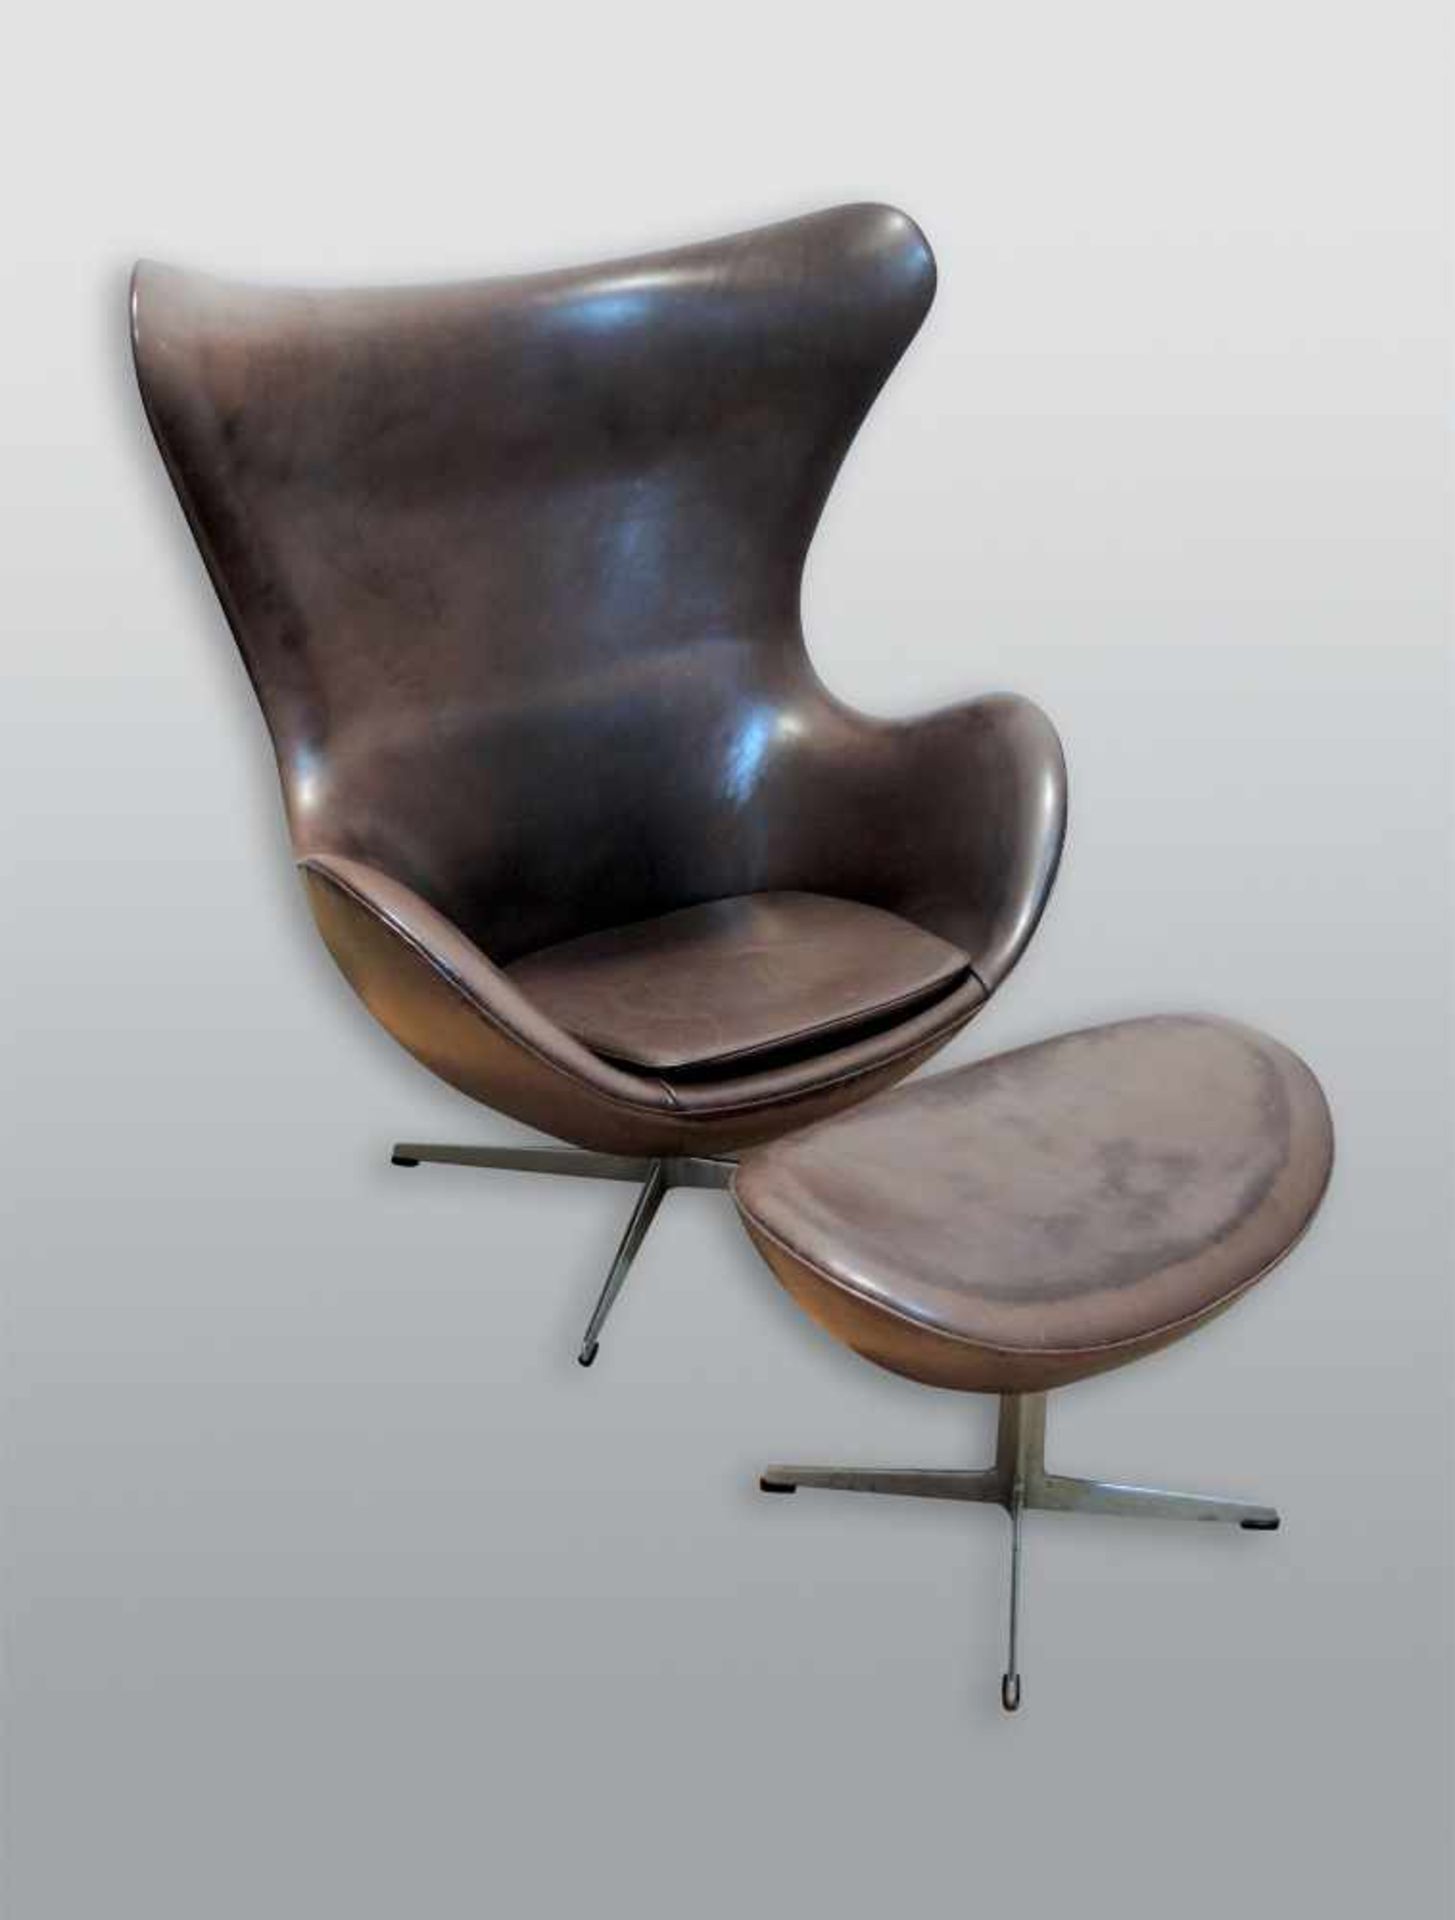 Egg Chair Grau und braunes Leder, mit Fußhocker. Entwurf von Arne Jacobsen um 1958. H x B x T